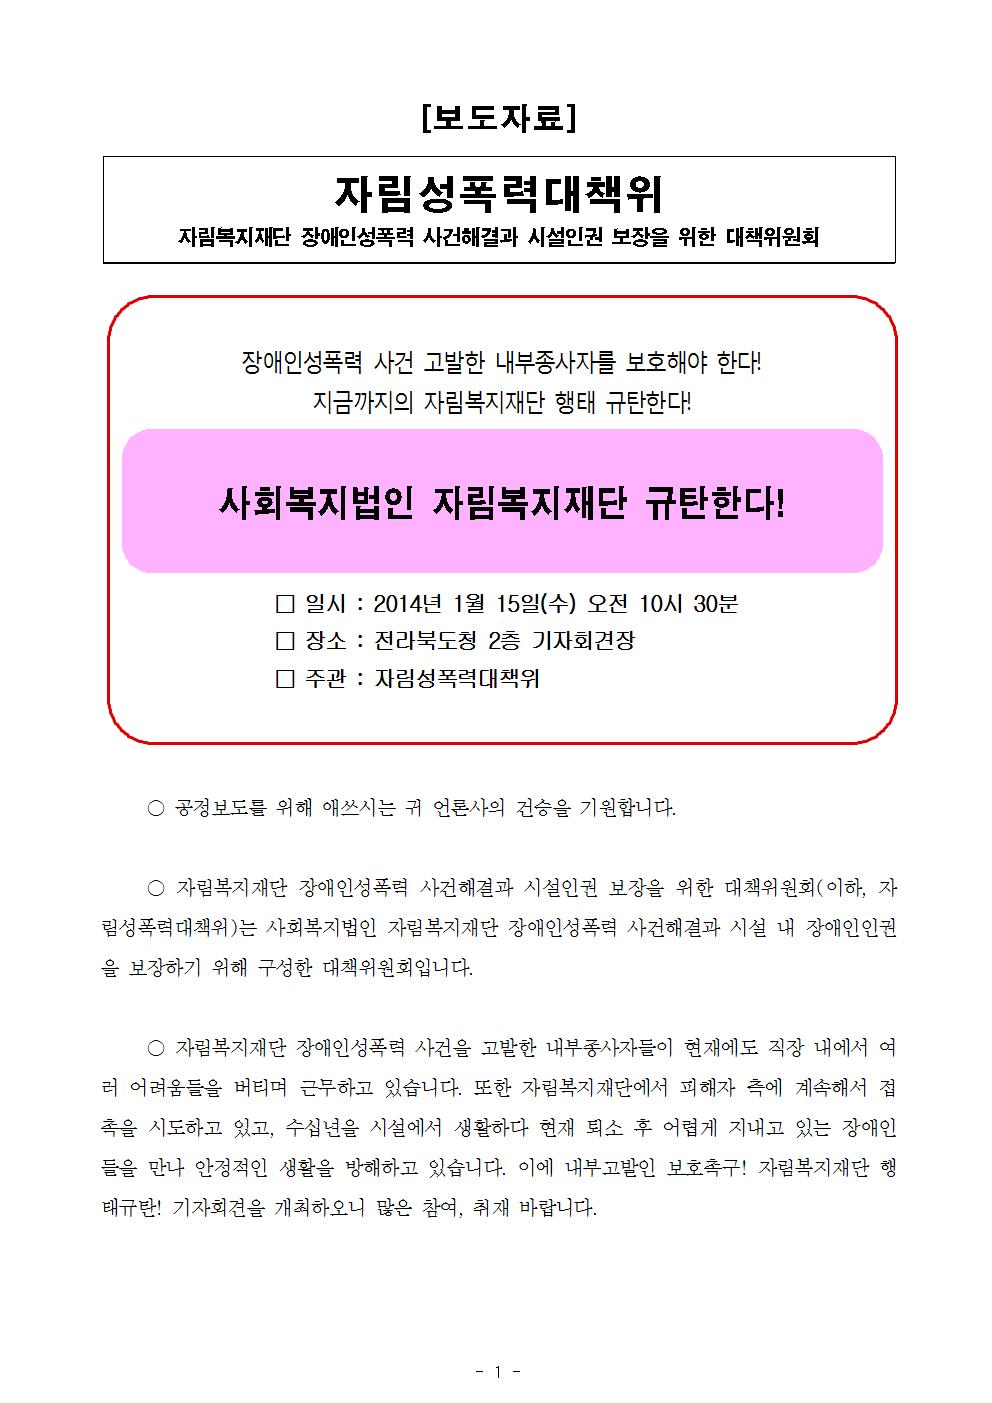 [보도자료]자림복지재단규탄기자회견_2014.01.15[최종]001.jpg